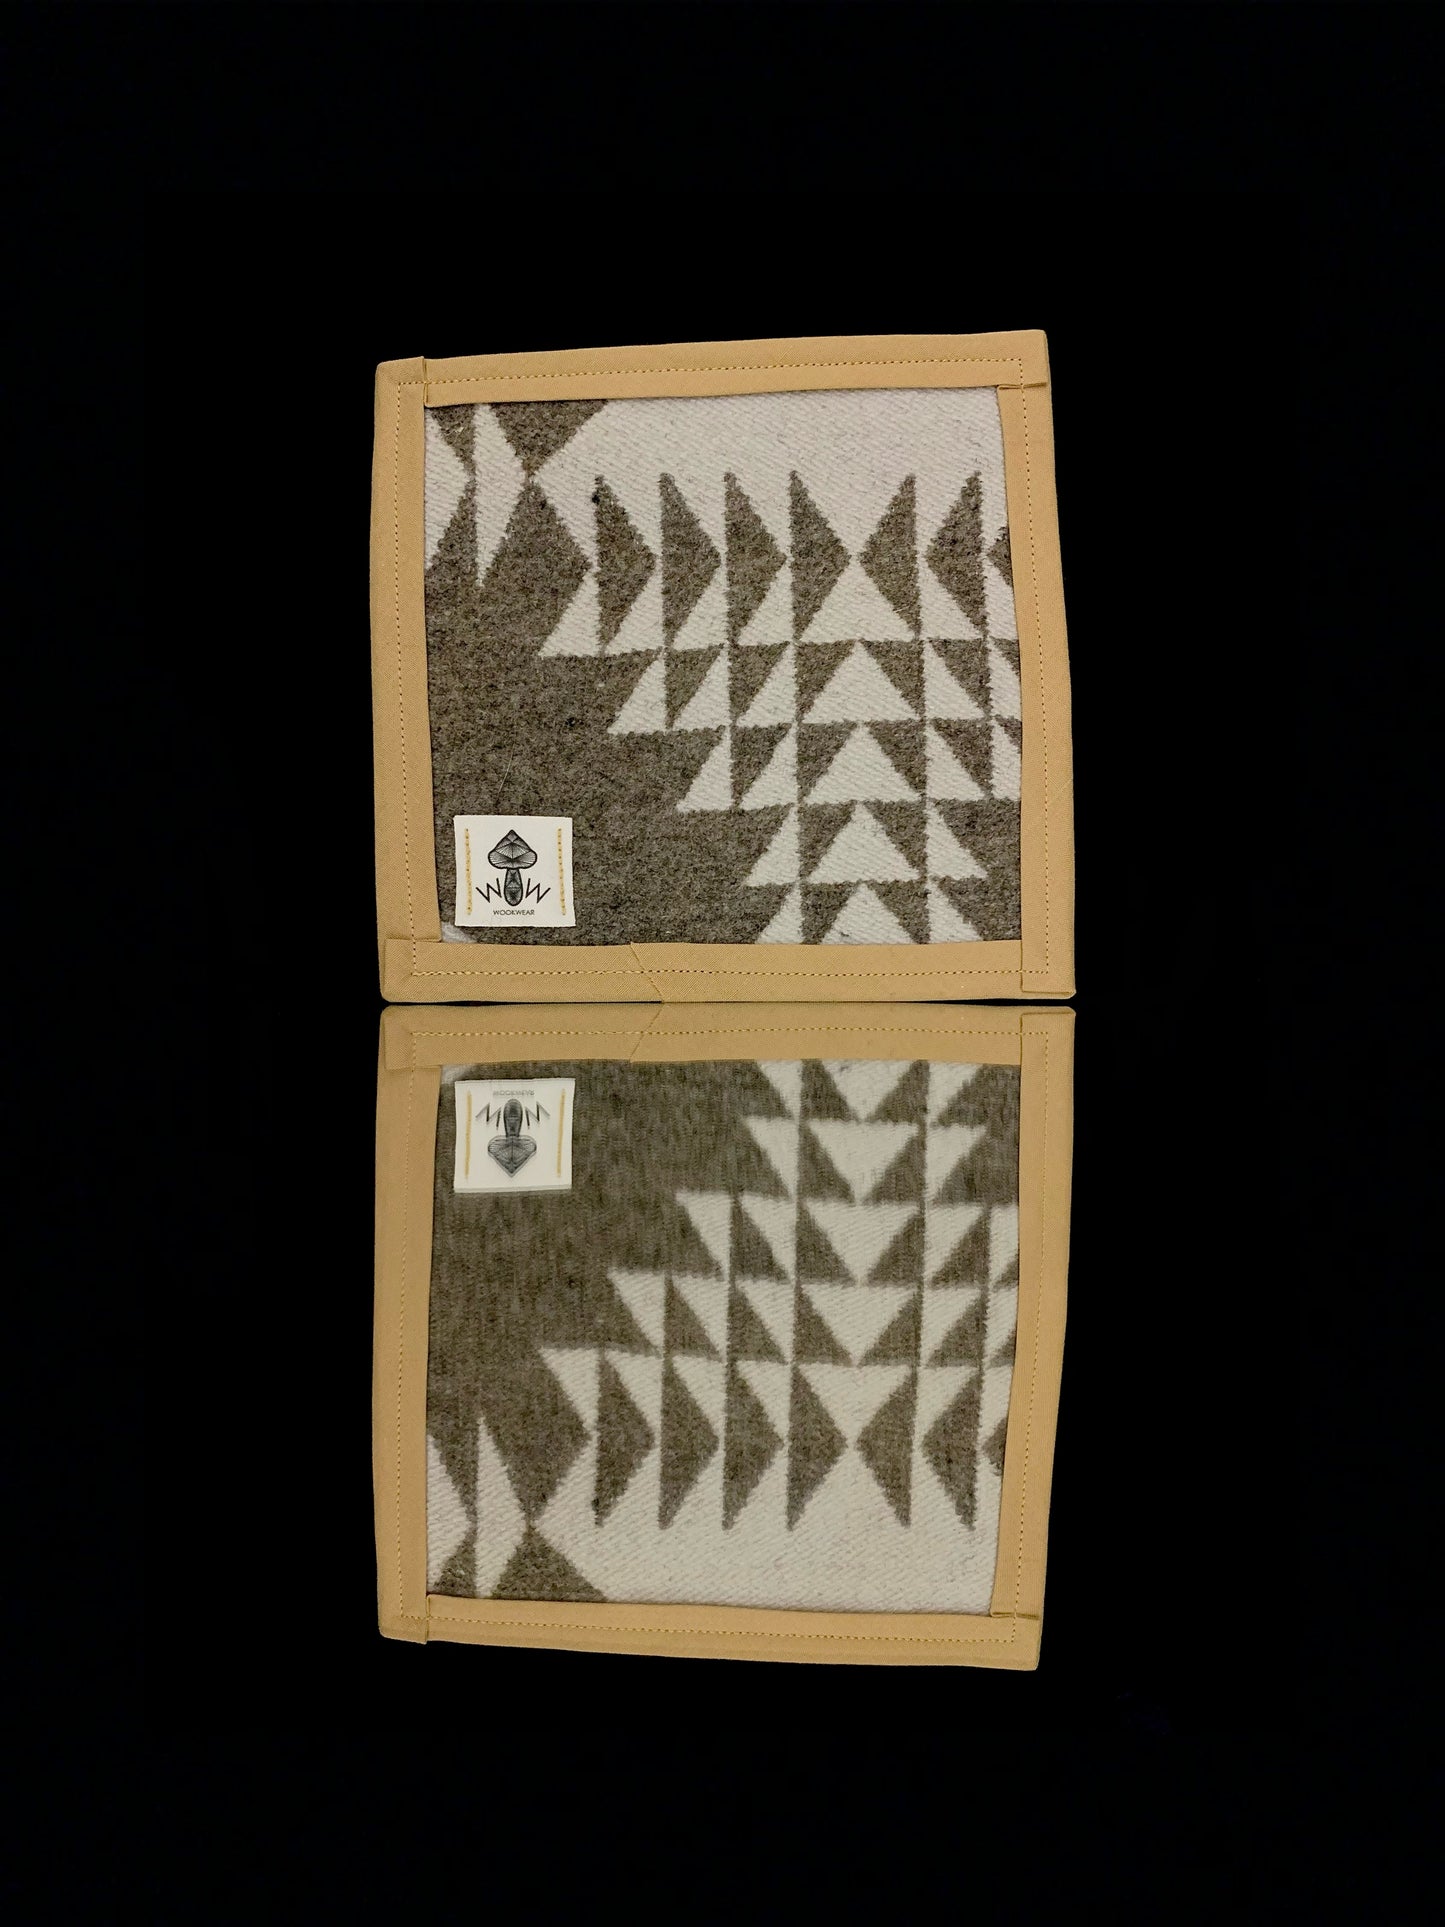 6” x 6” Pendleton mat by Wook Wear